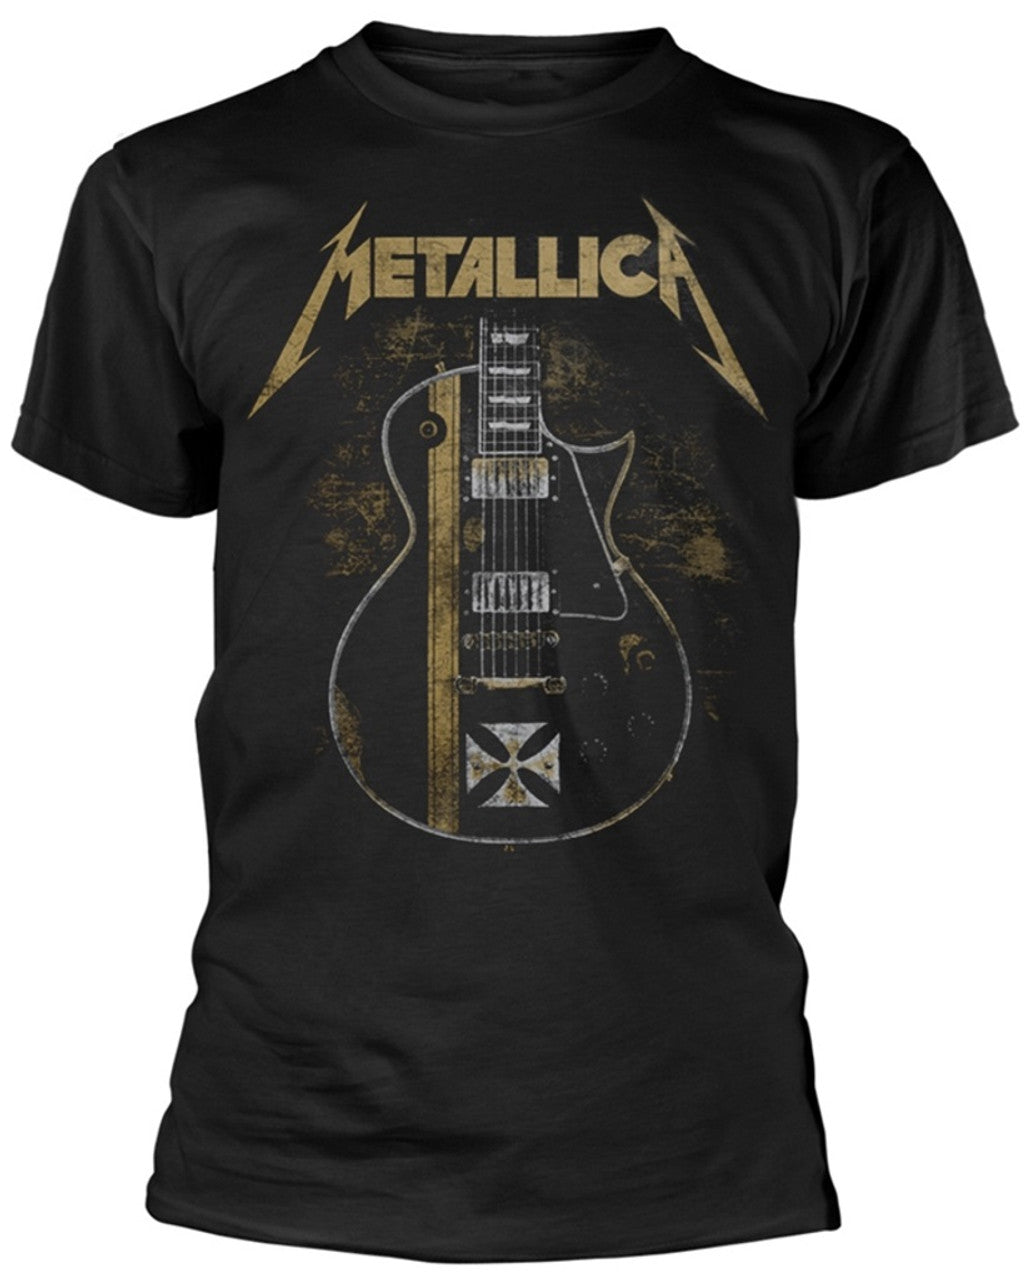 Metallica - T-Shirt - Hetfield Iron Cross (Bolur)